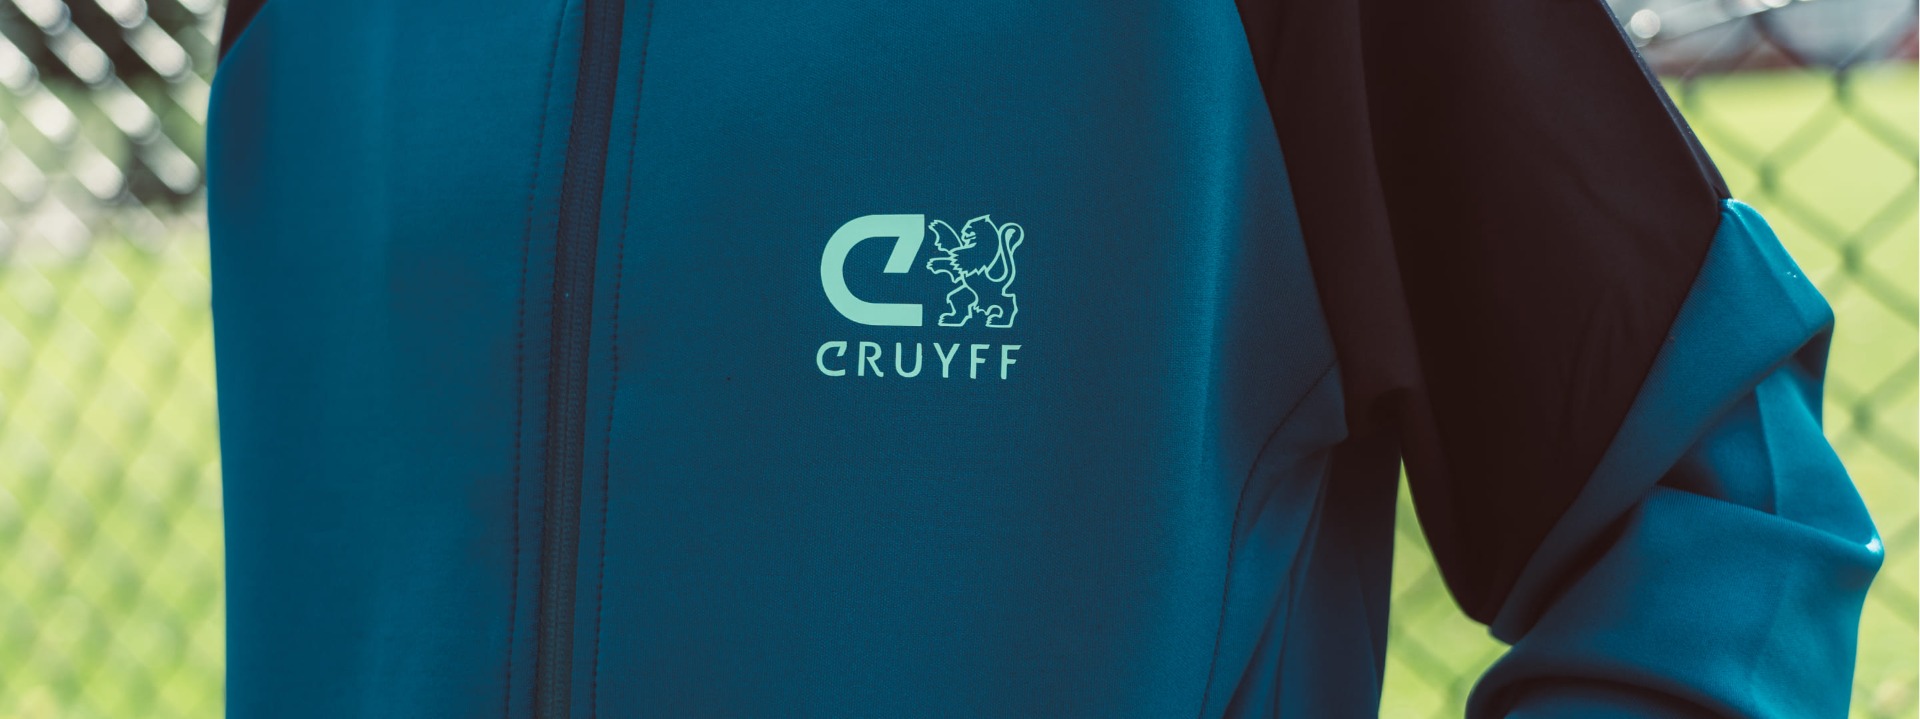 20210908-slider-header-Cruyff-collectie-1.jpg